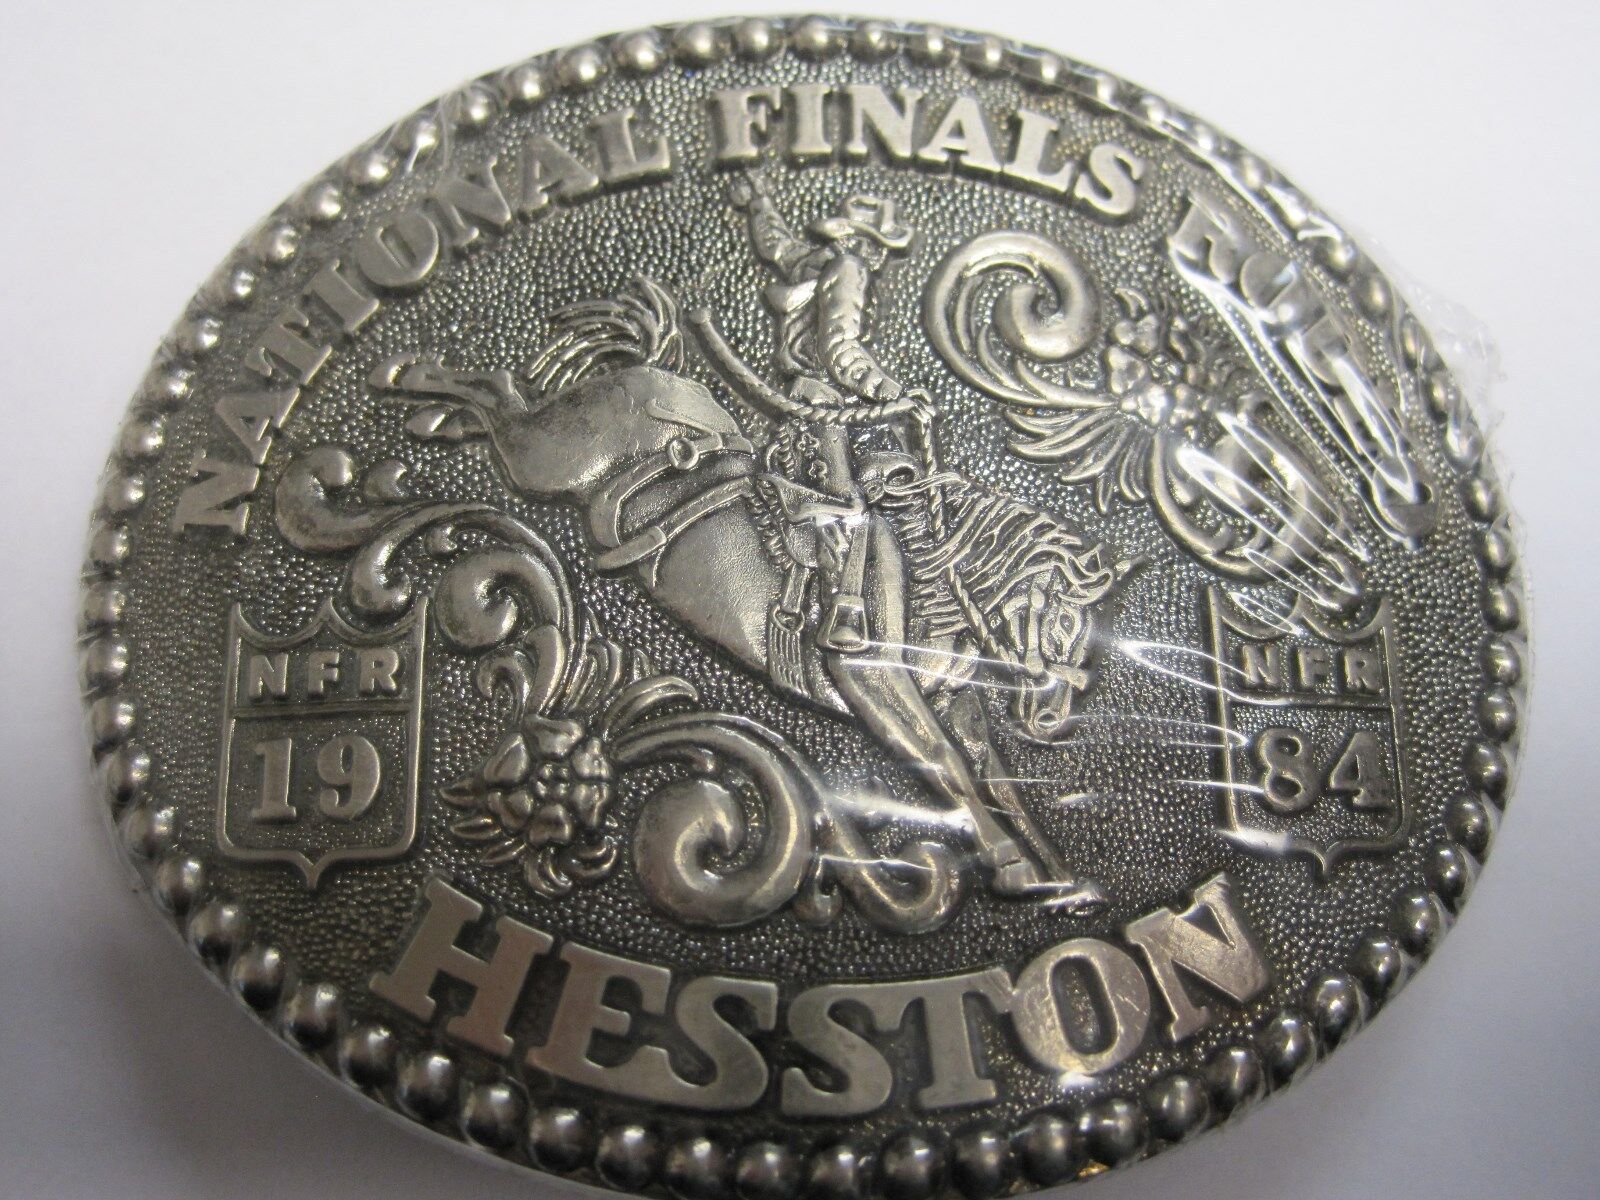 National Finals Rodeo Hesston 1984 NFR Adult Cowboy Buckle Vintage Orig. Pkg.   